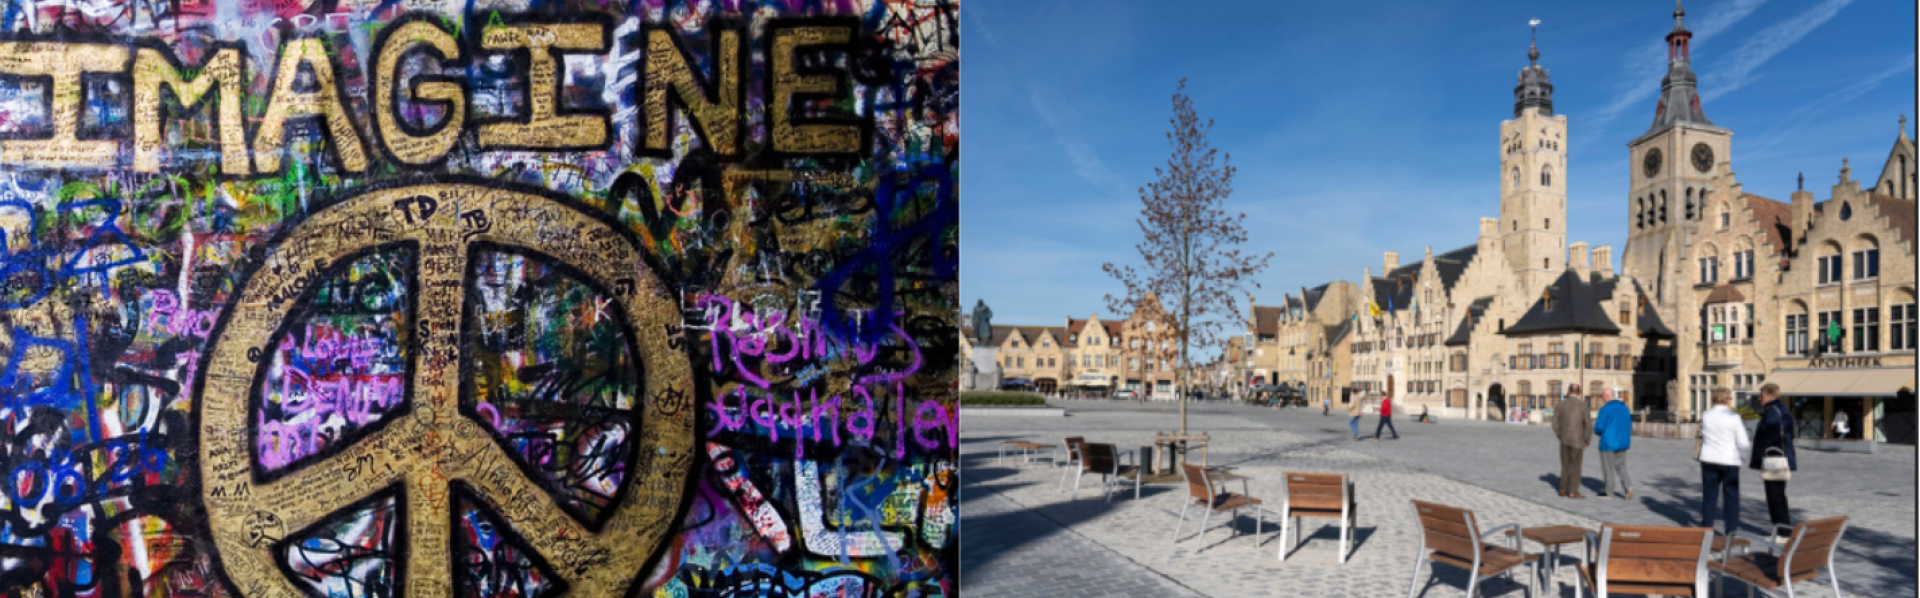 Imagine peace graffiti op de Lennon Wall met daarnaast marktplein van Diksmuide